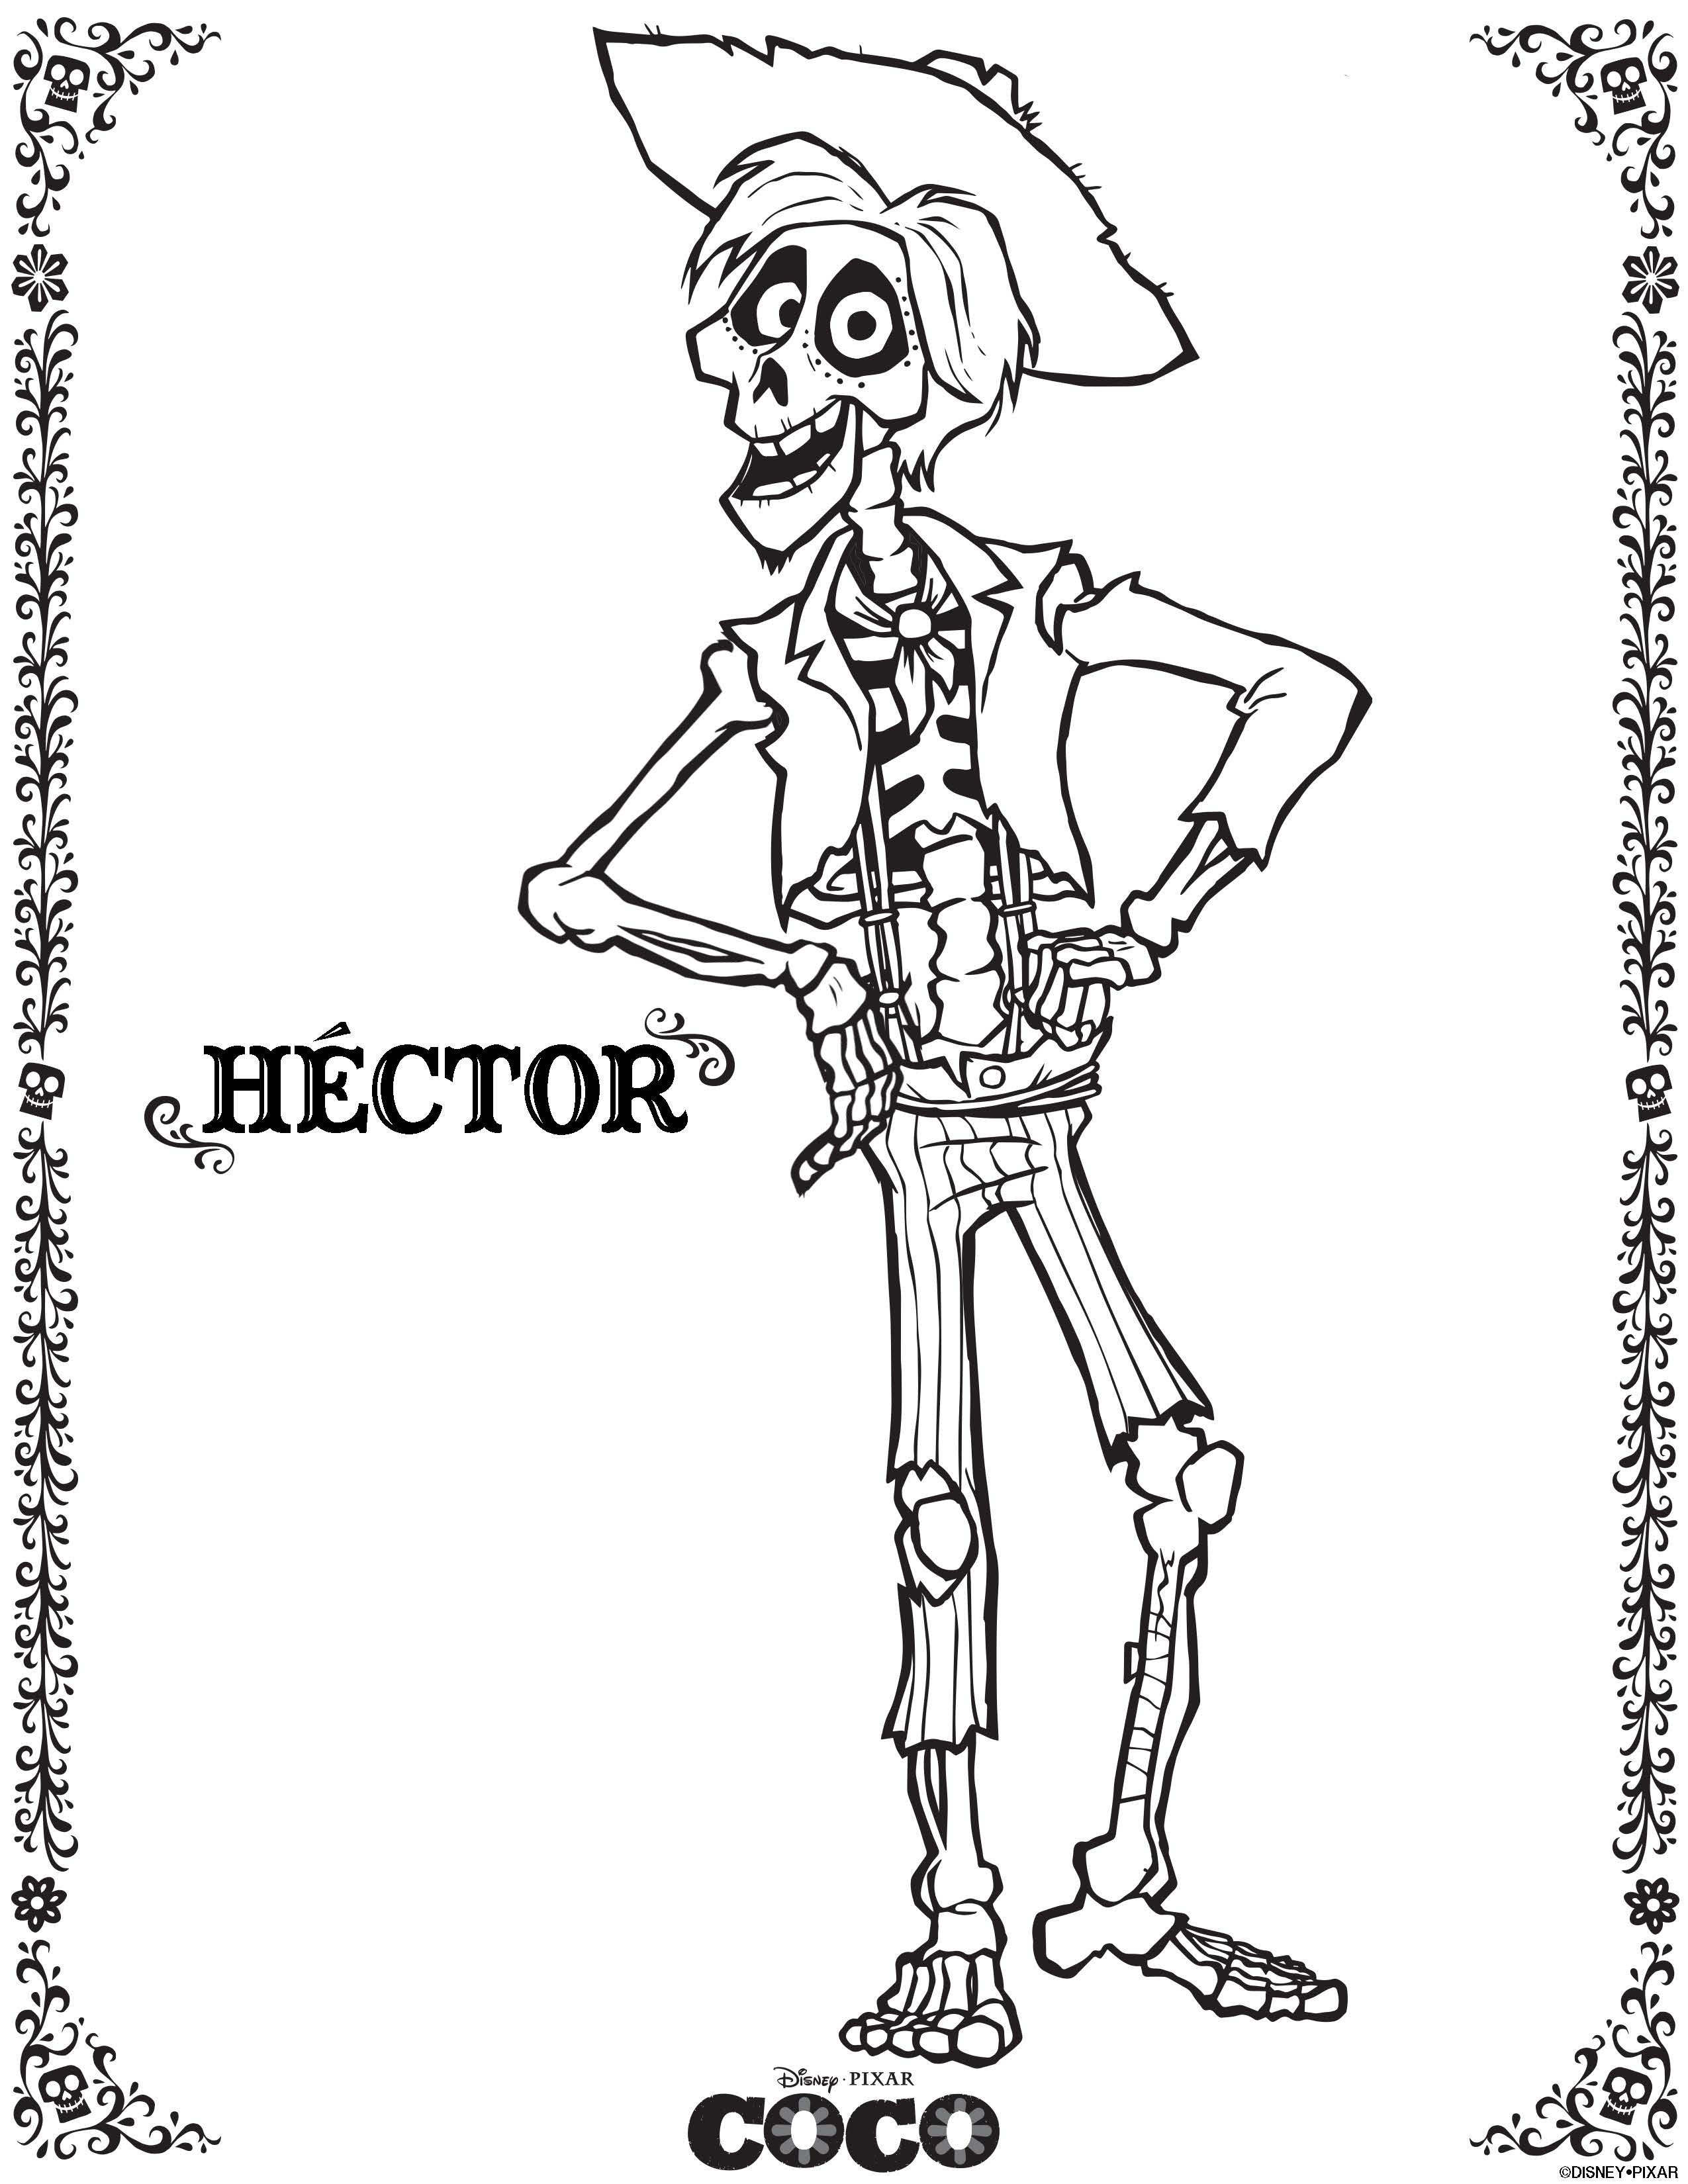 Hector – Cocos